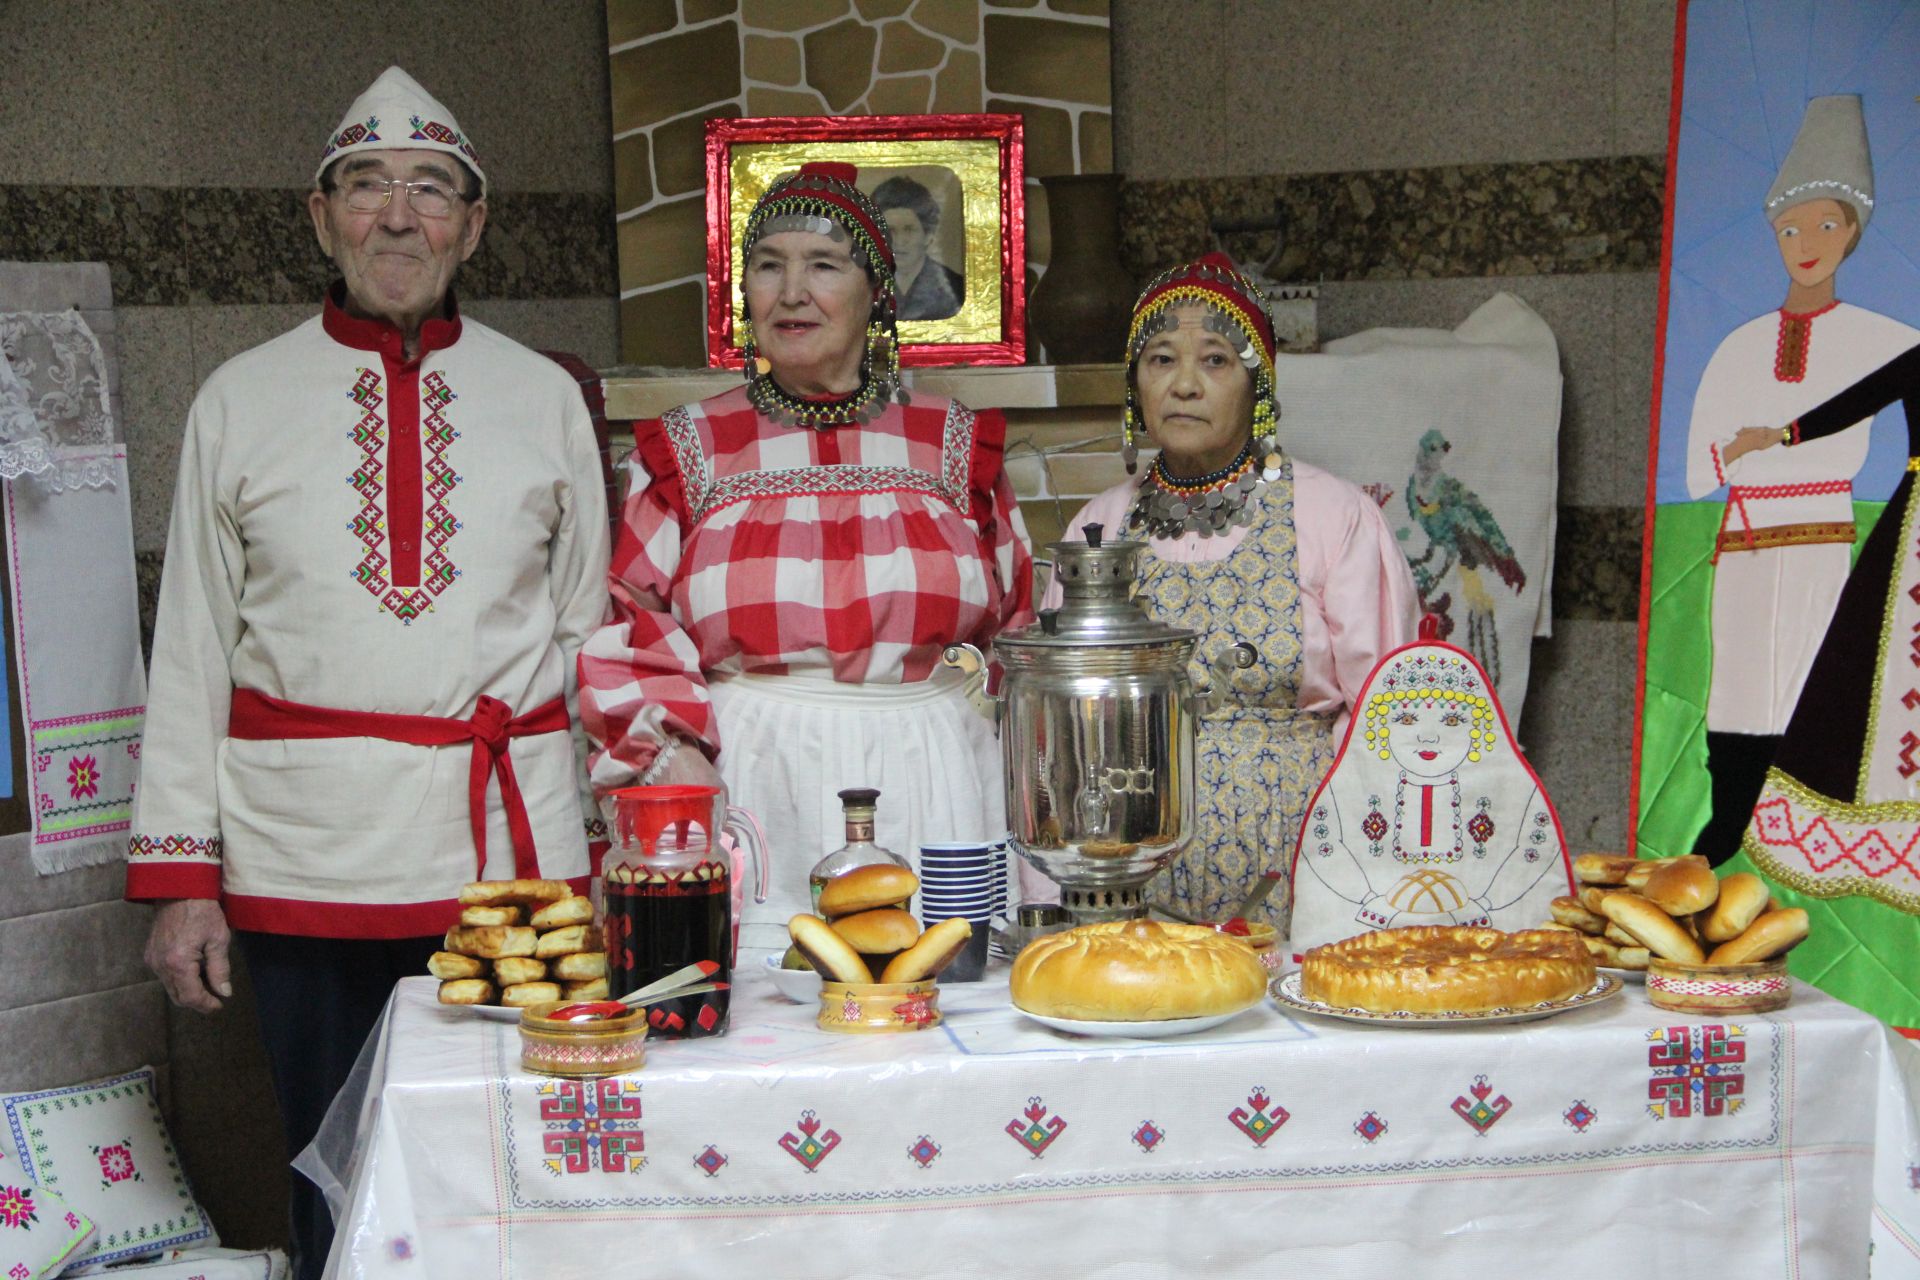 В Болгаре прошёл муниципальный этап фестиваля-конкурса родословных «Эхо веков в истории семьи»